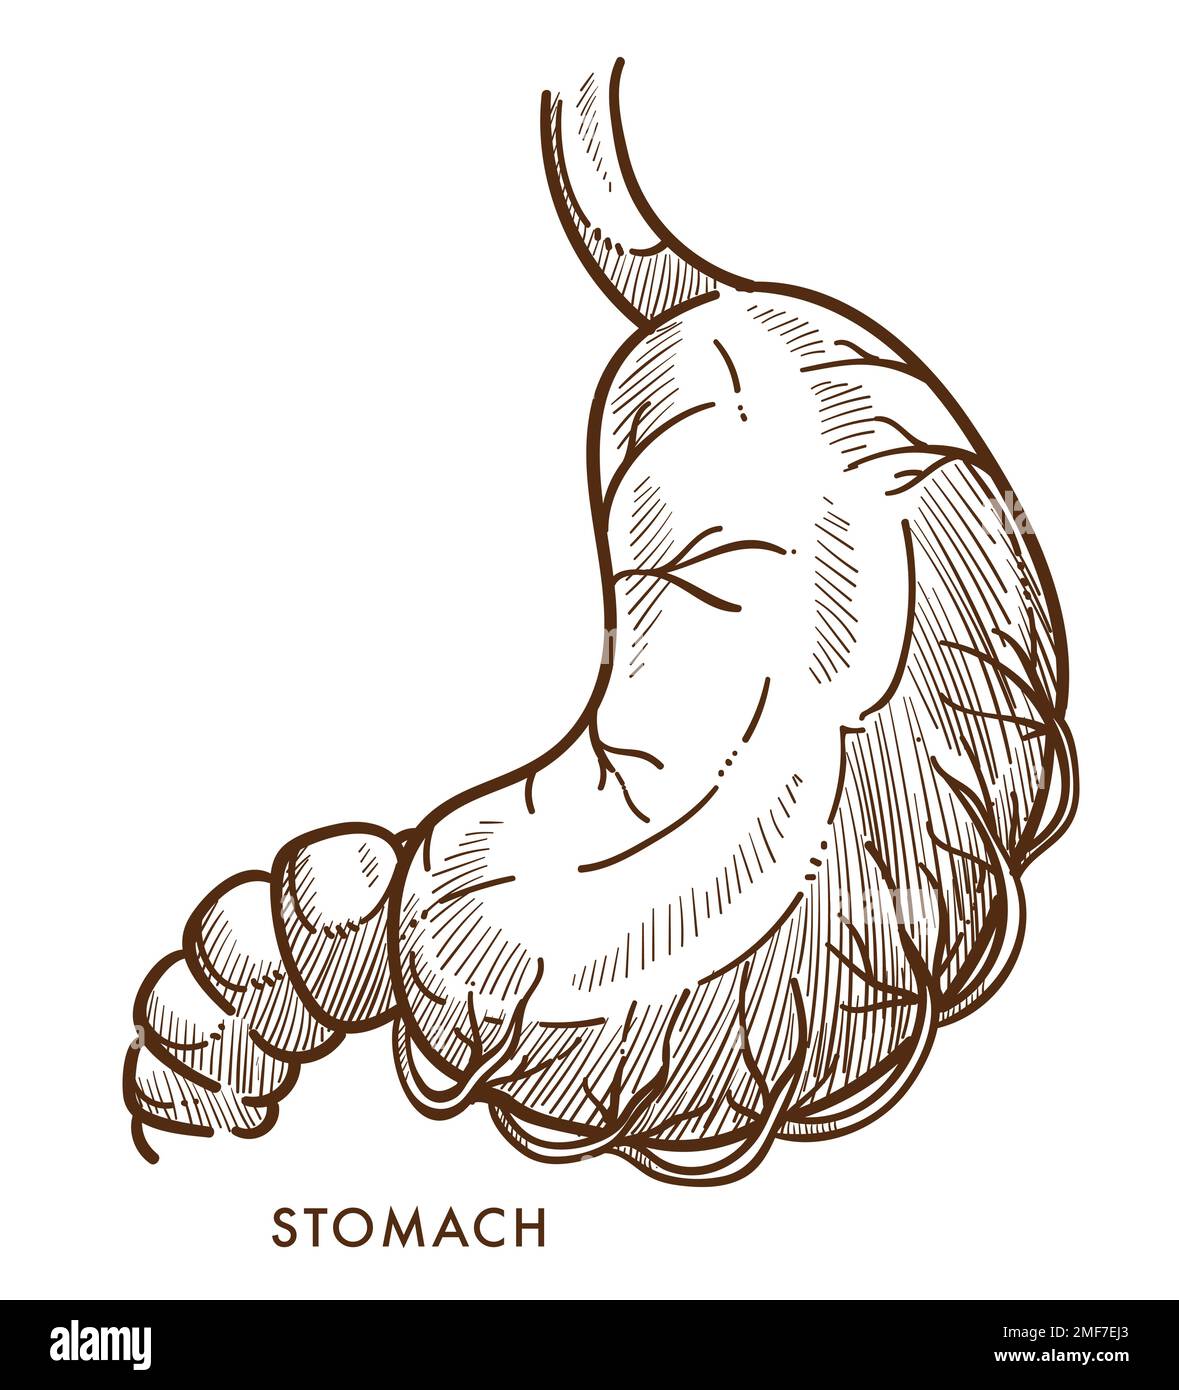 Stomach sketch icon Royalty Free Vector Image  VectorStock